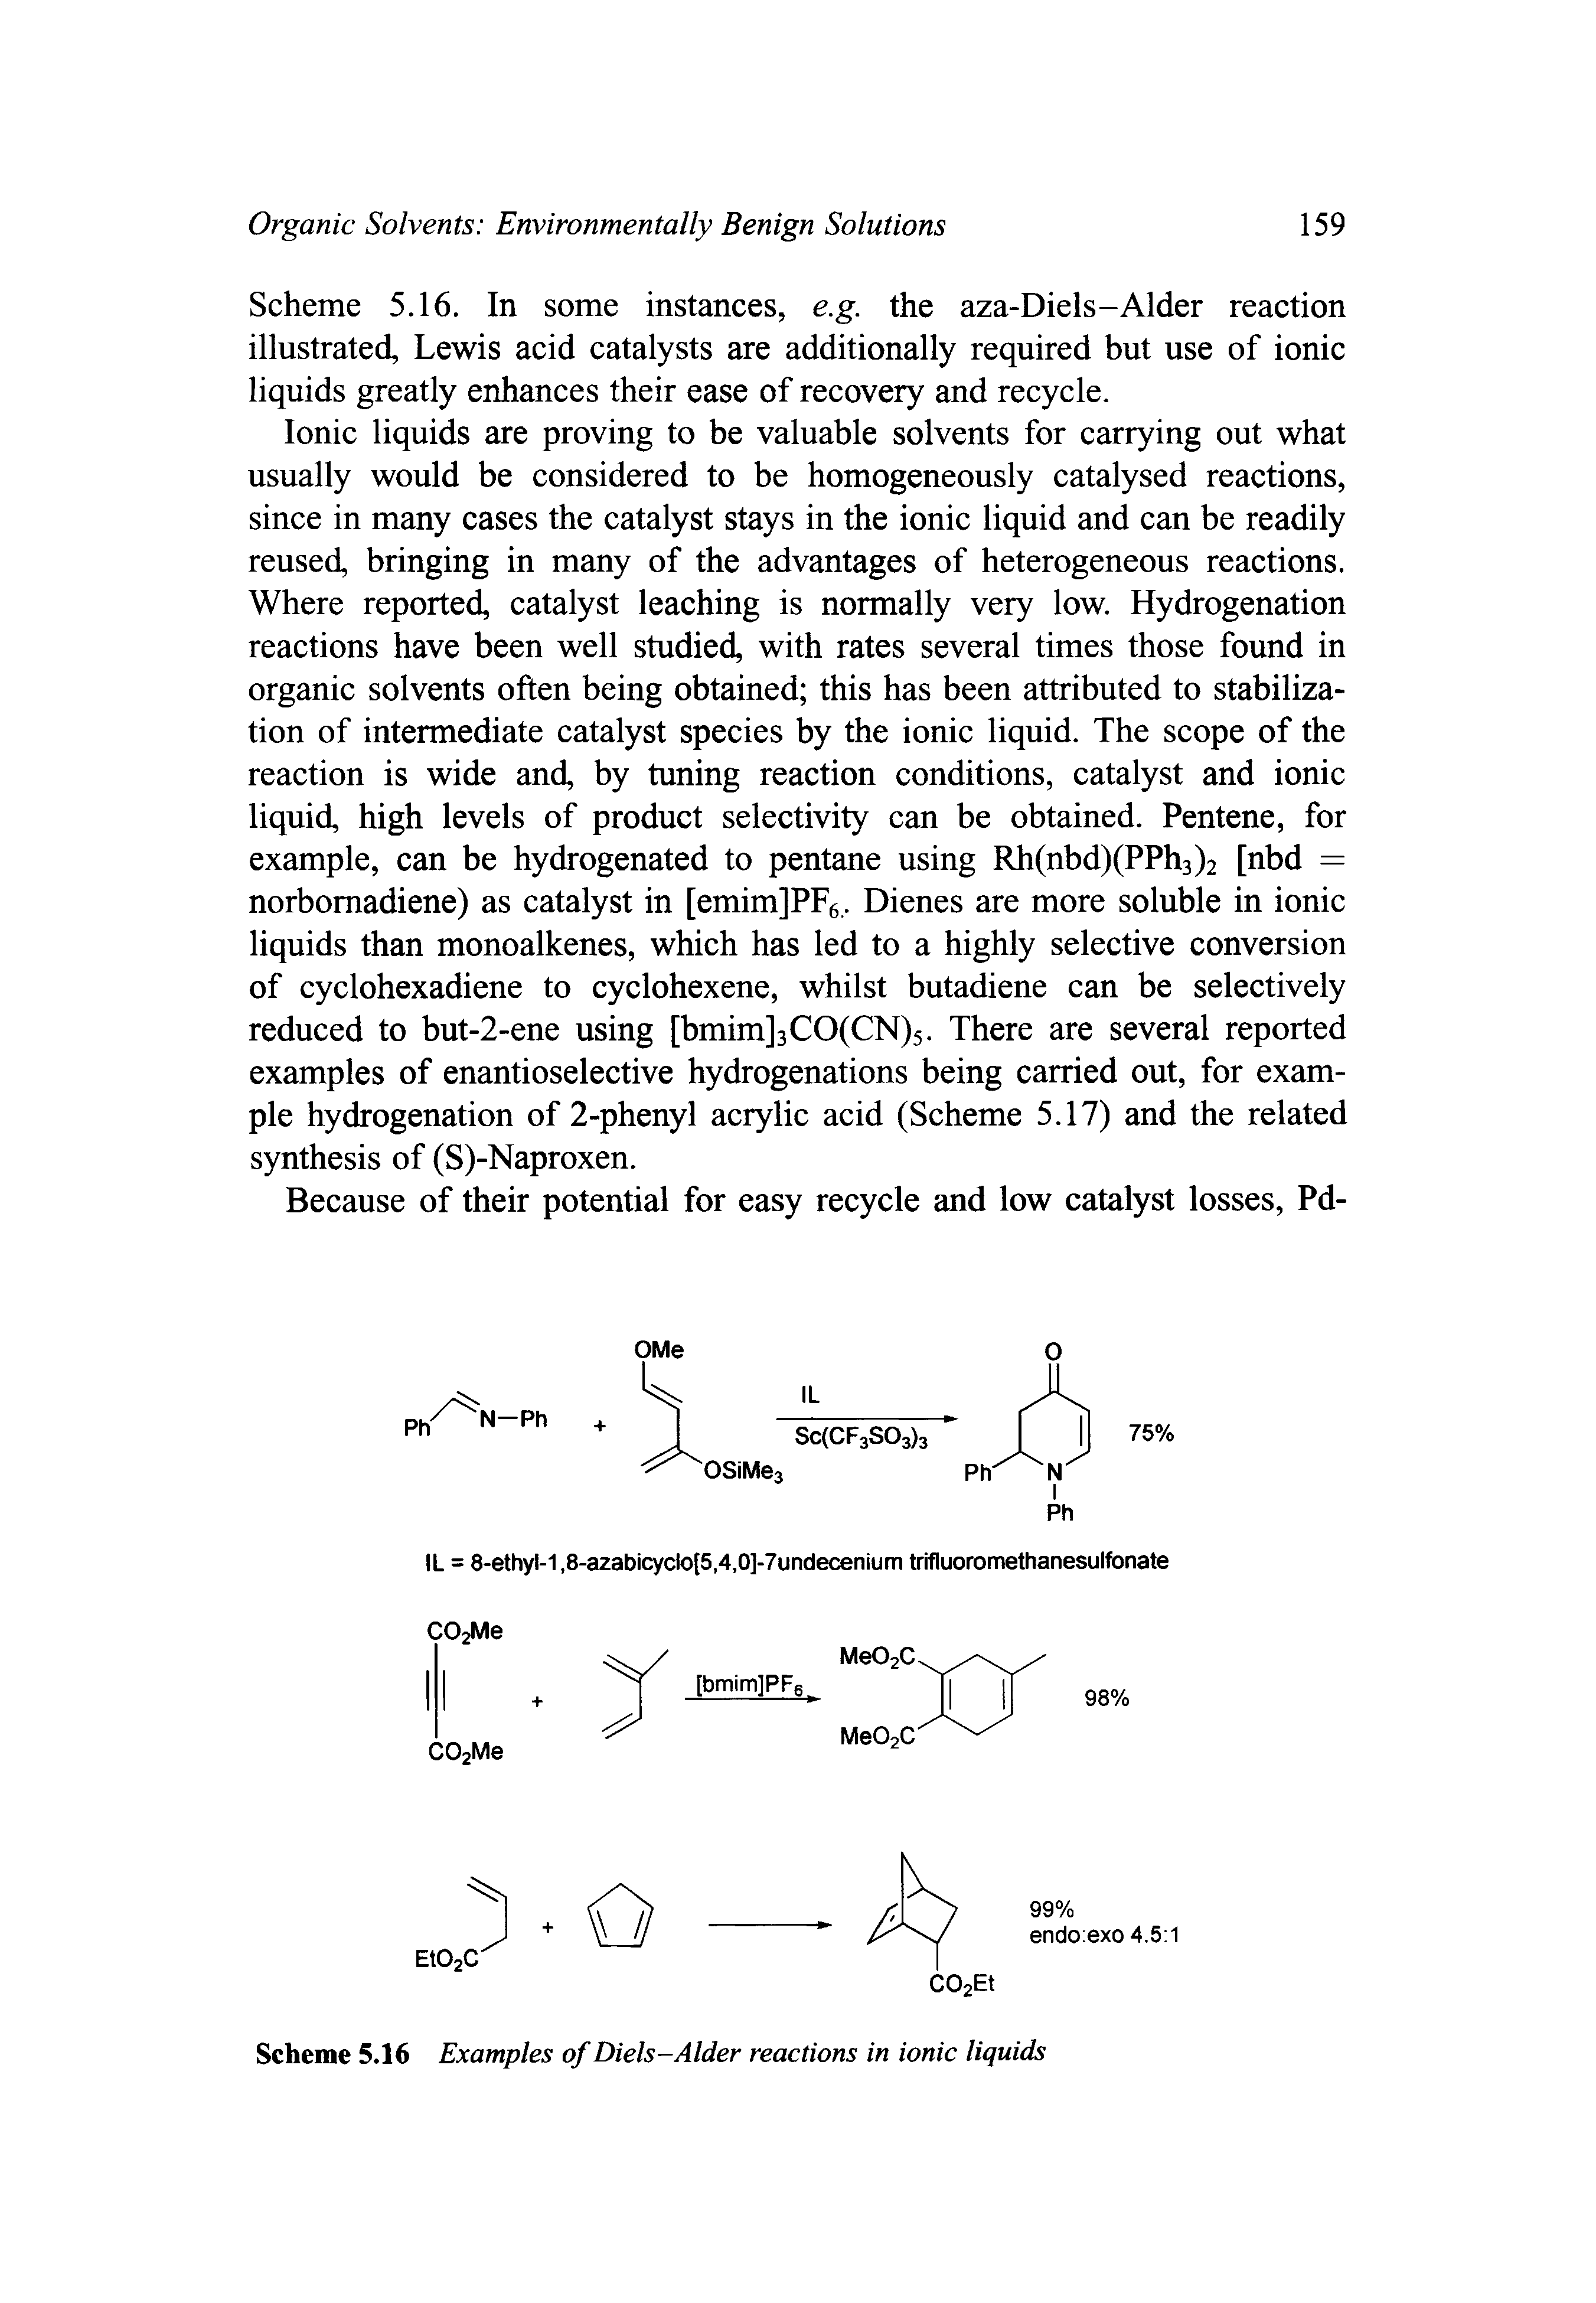 Scheme 5.16 Examples of Diels-Alder reactions in ionic liquids...